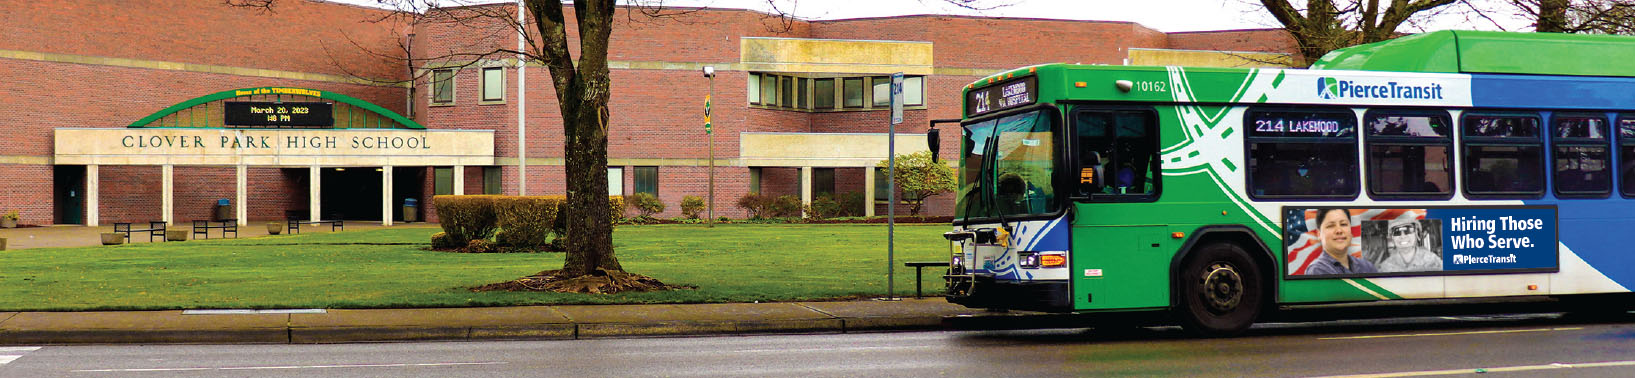 bus front of school